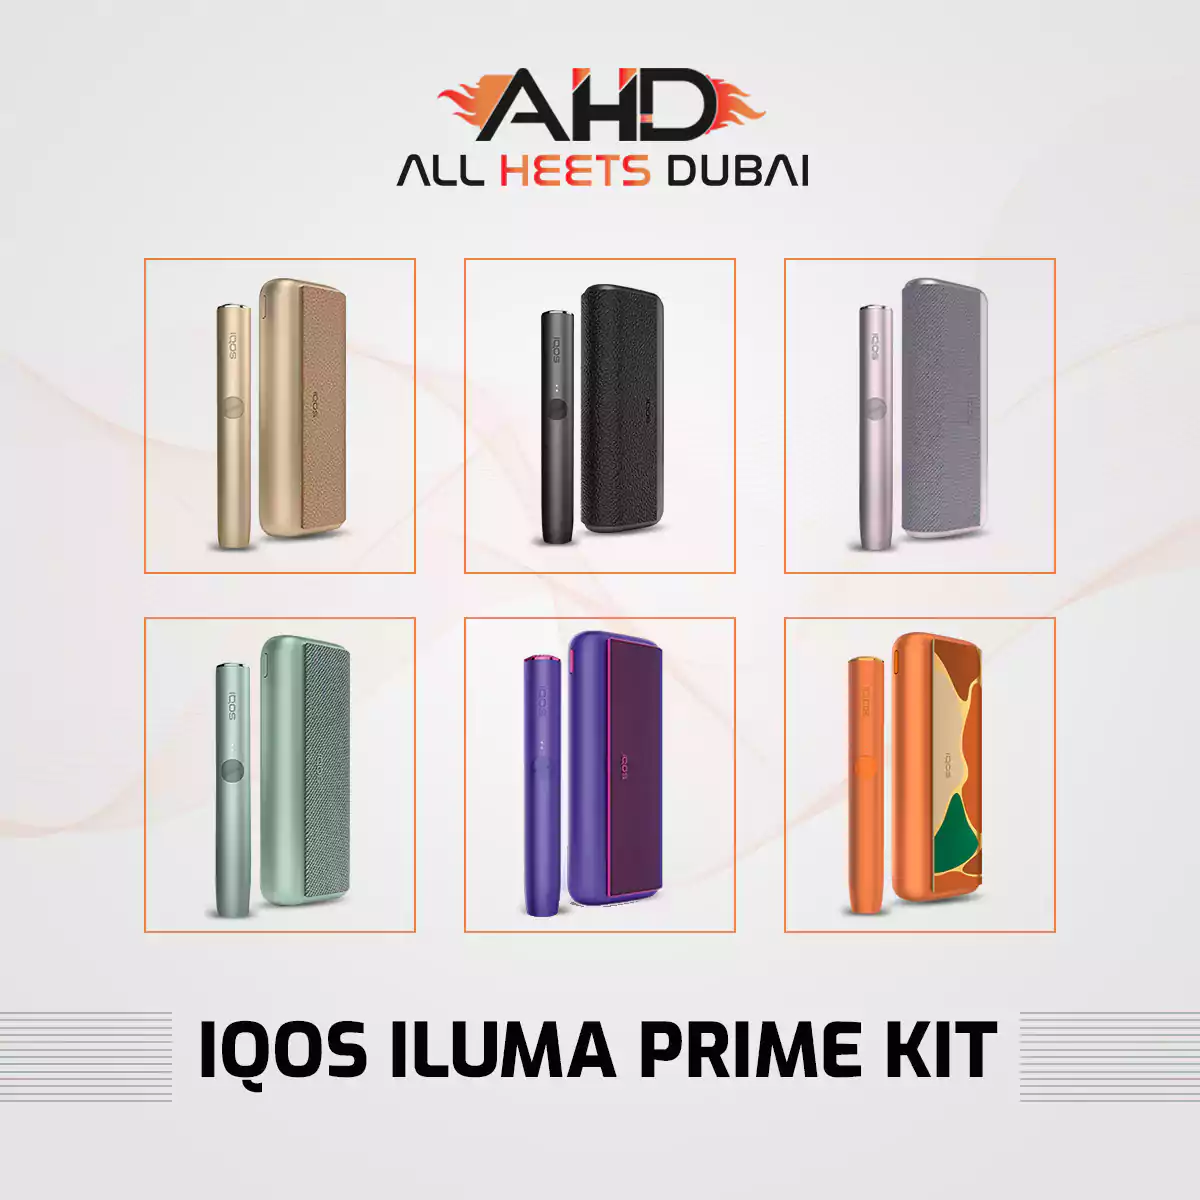 IQOS Iluma Prime In UAE